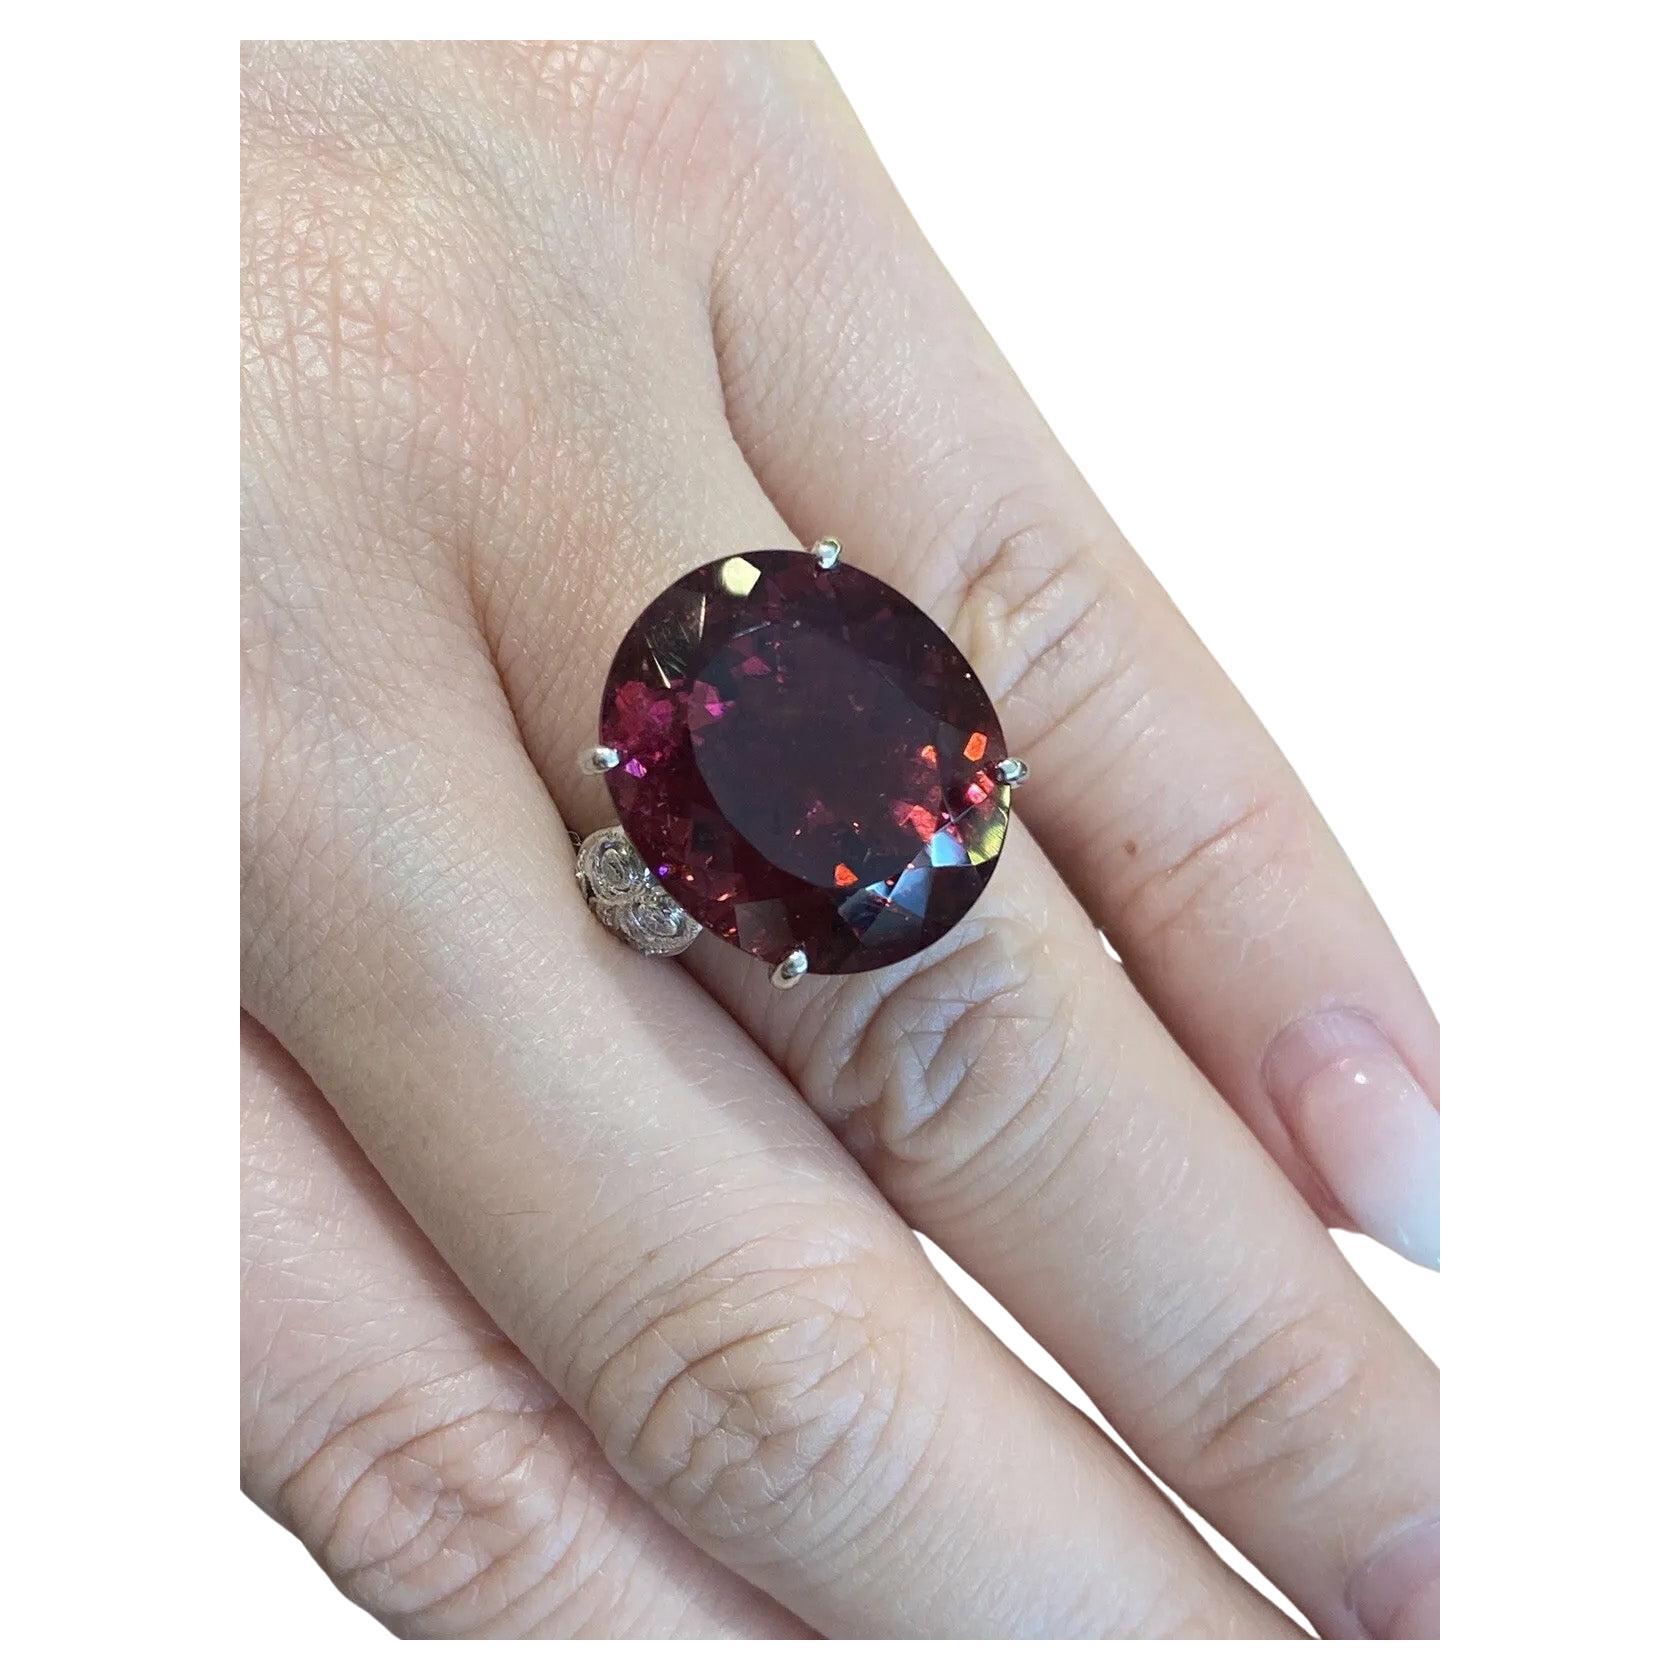 GIA-zertifiziert 27,58 Karat Oval Rubellit Ring mit Diamanten in Platin

Der Rubellit-Diamant-Ring besteht aus einem purpurroten, ovalen Rubellit, der von 24 runden Brillanten in Platin eingefasst ist.

Das Gesamtgewicht des Rubellits beträgt 27,58